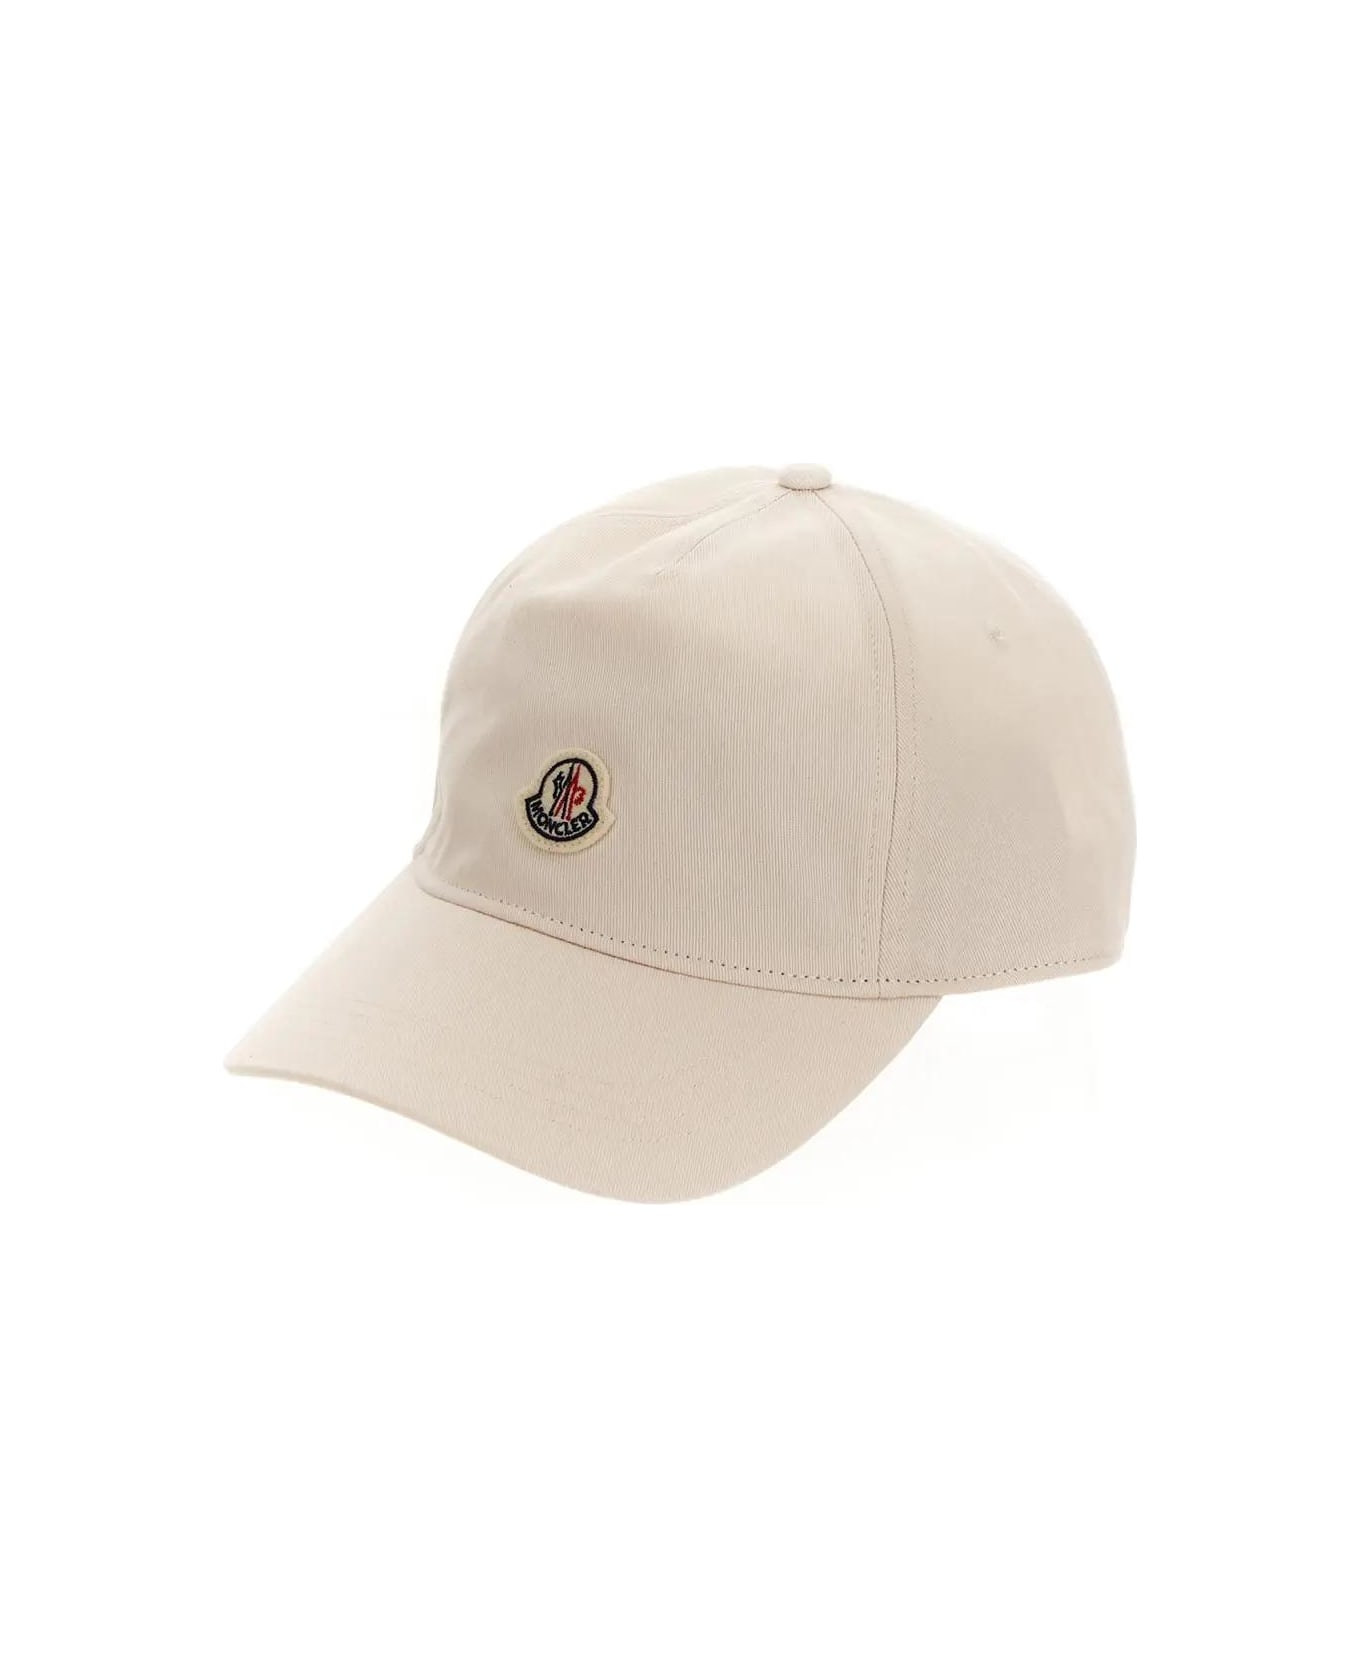 Moncler Cotton Baseball Hat - White